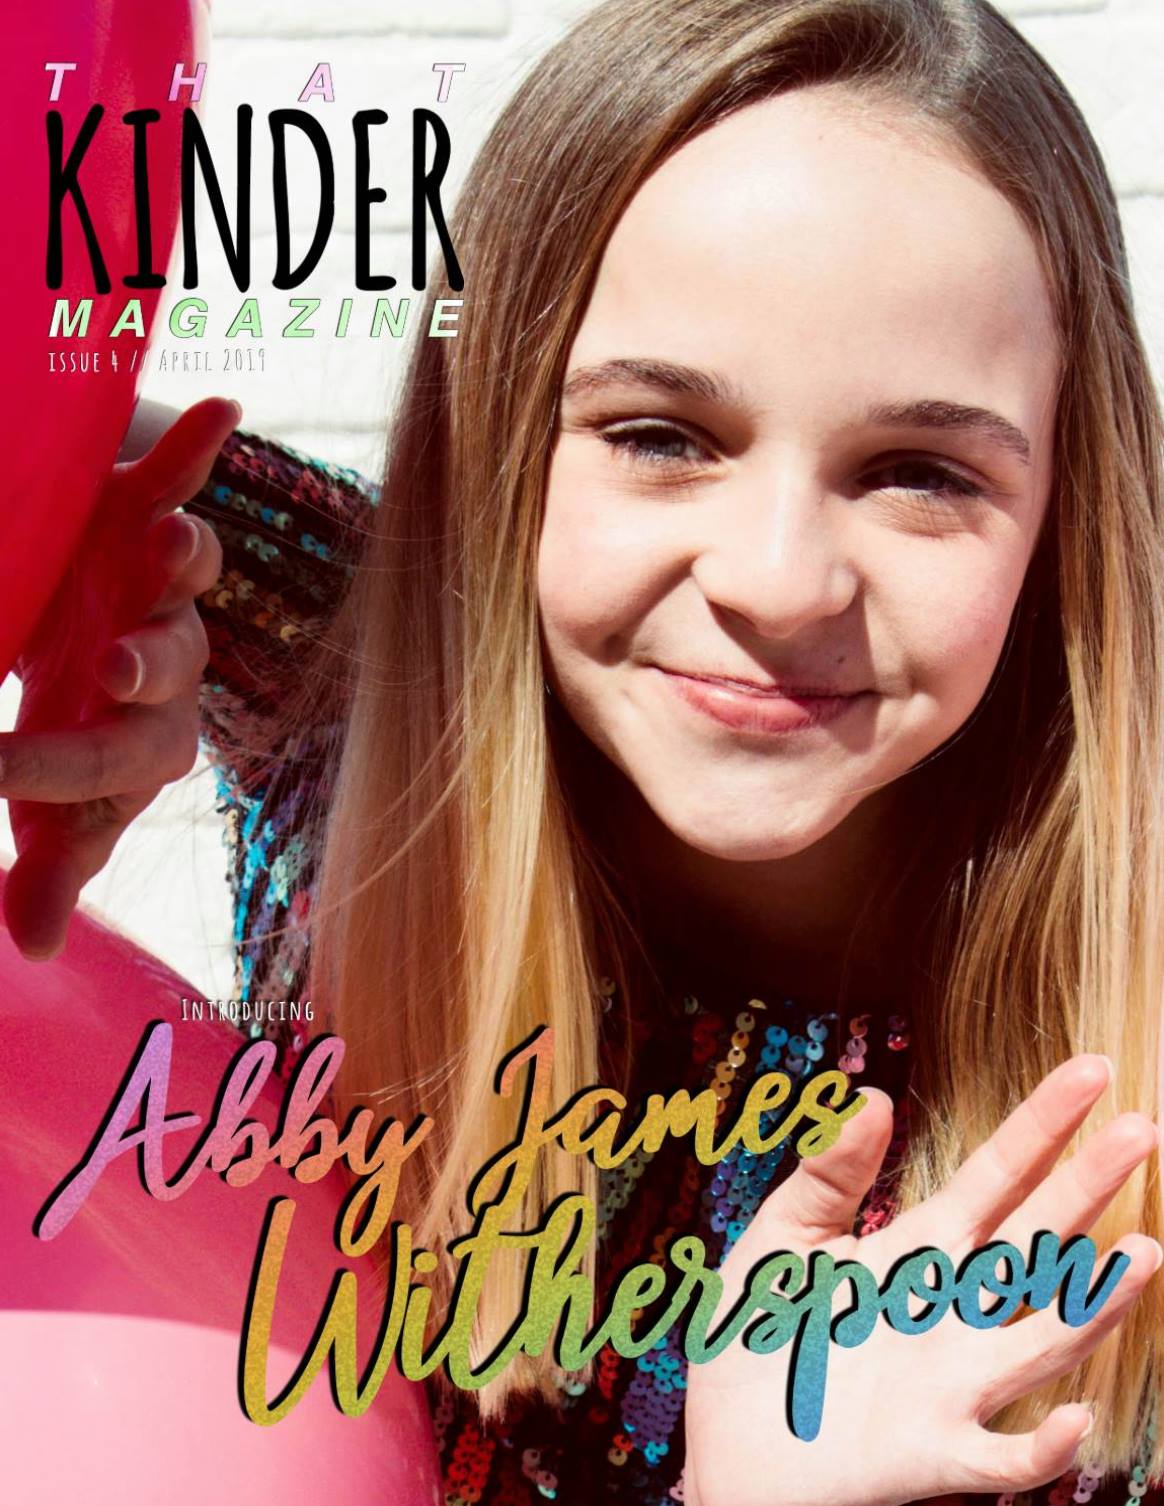 Kind magazine